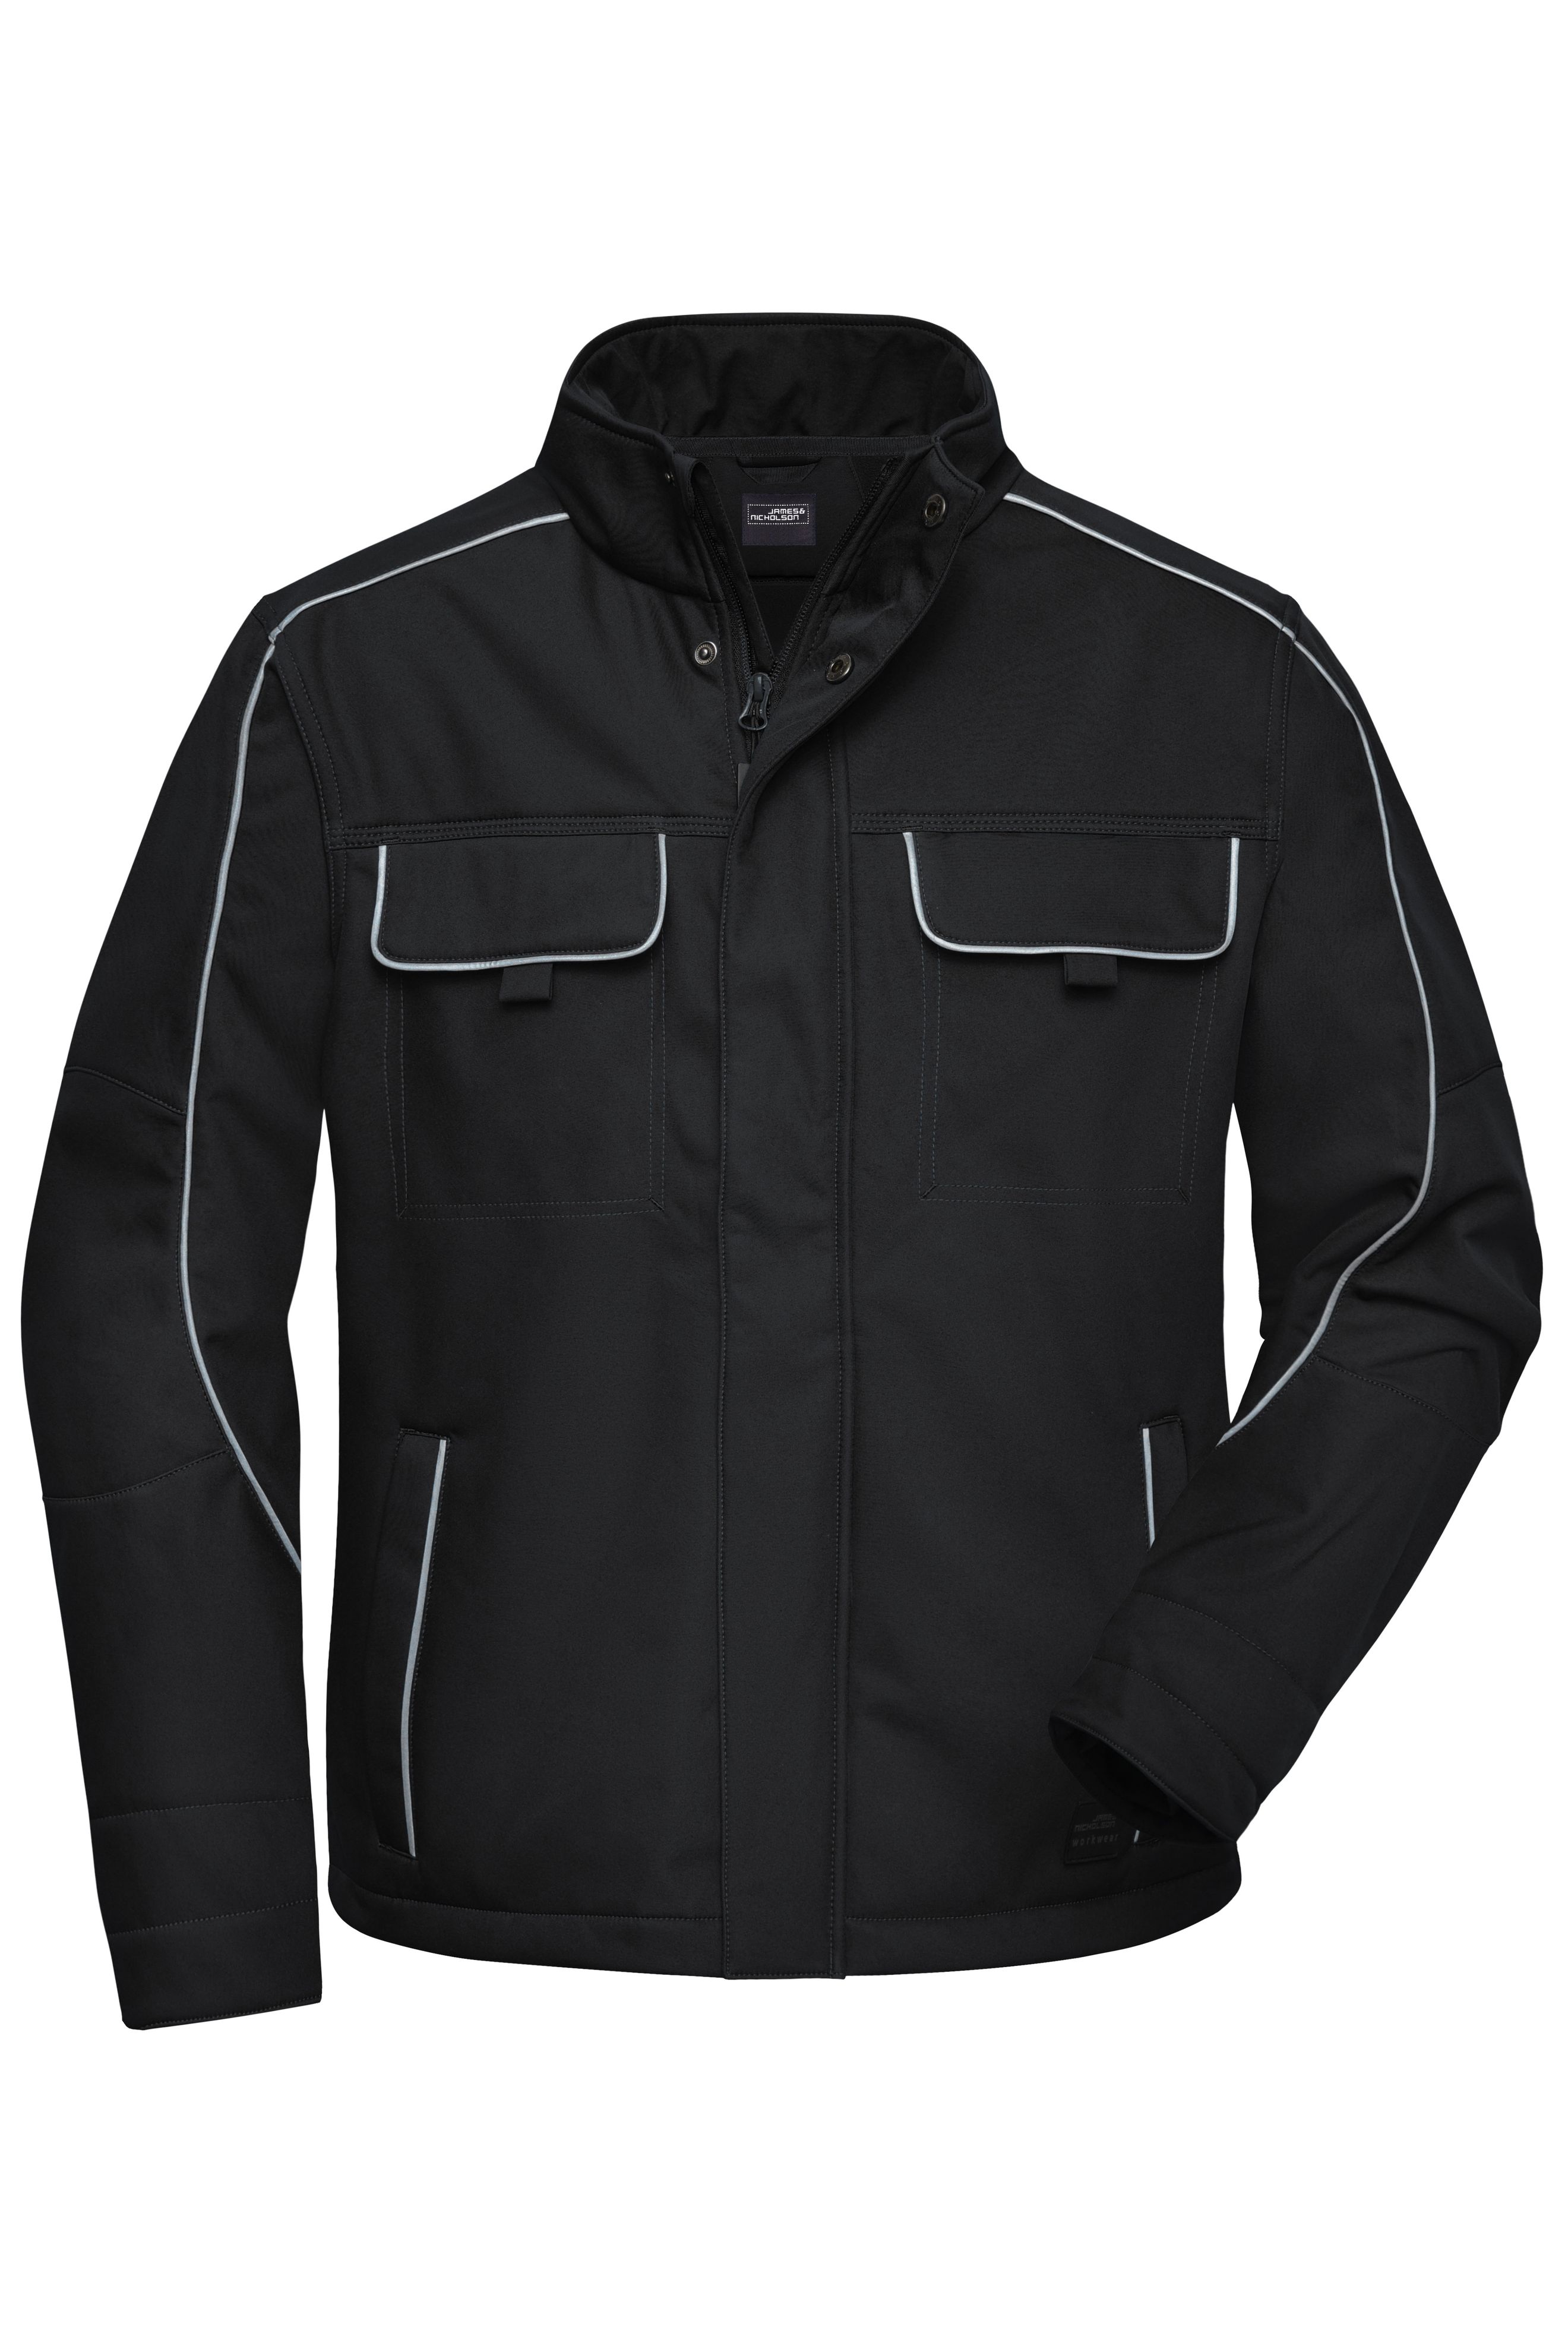 Workwear Softshell Jacket - SOLID - JN884 Professionelle Softshelljacke im cleanen Look mit hochwertigen Details